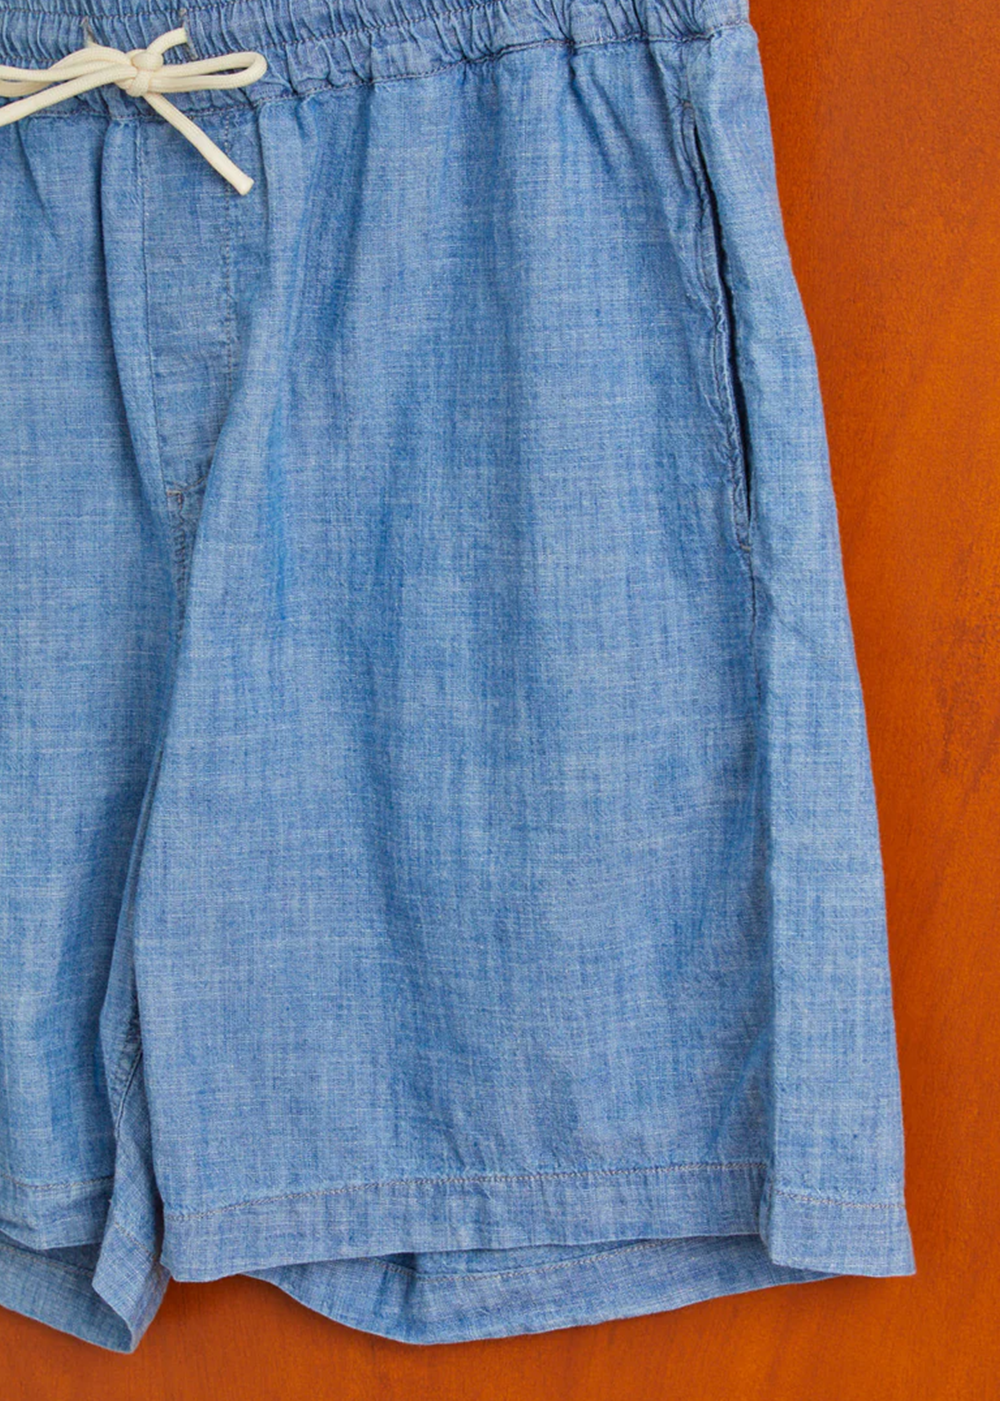 Chambray Men's Shorts - Blue - Portuguese Flannel Canada - Danali